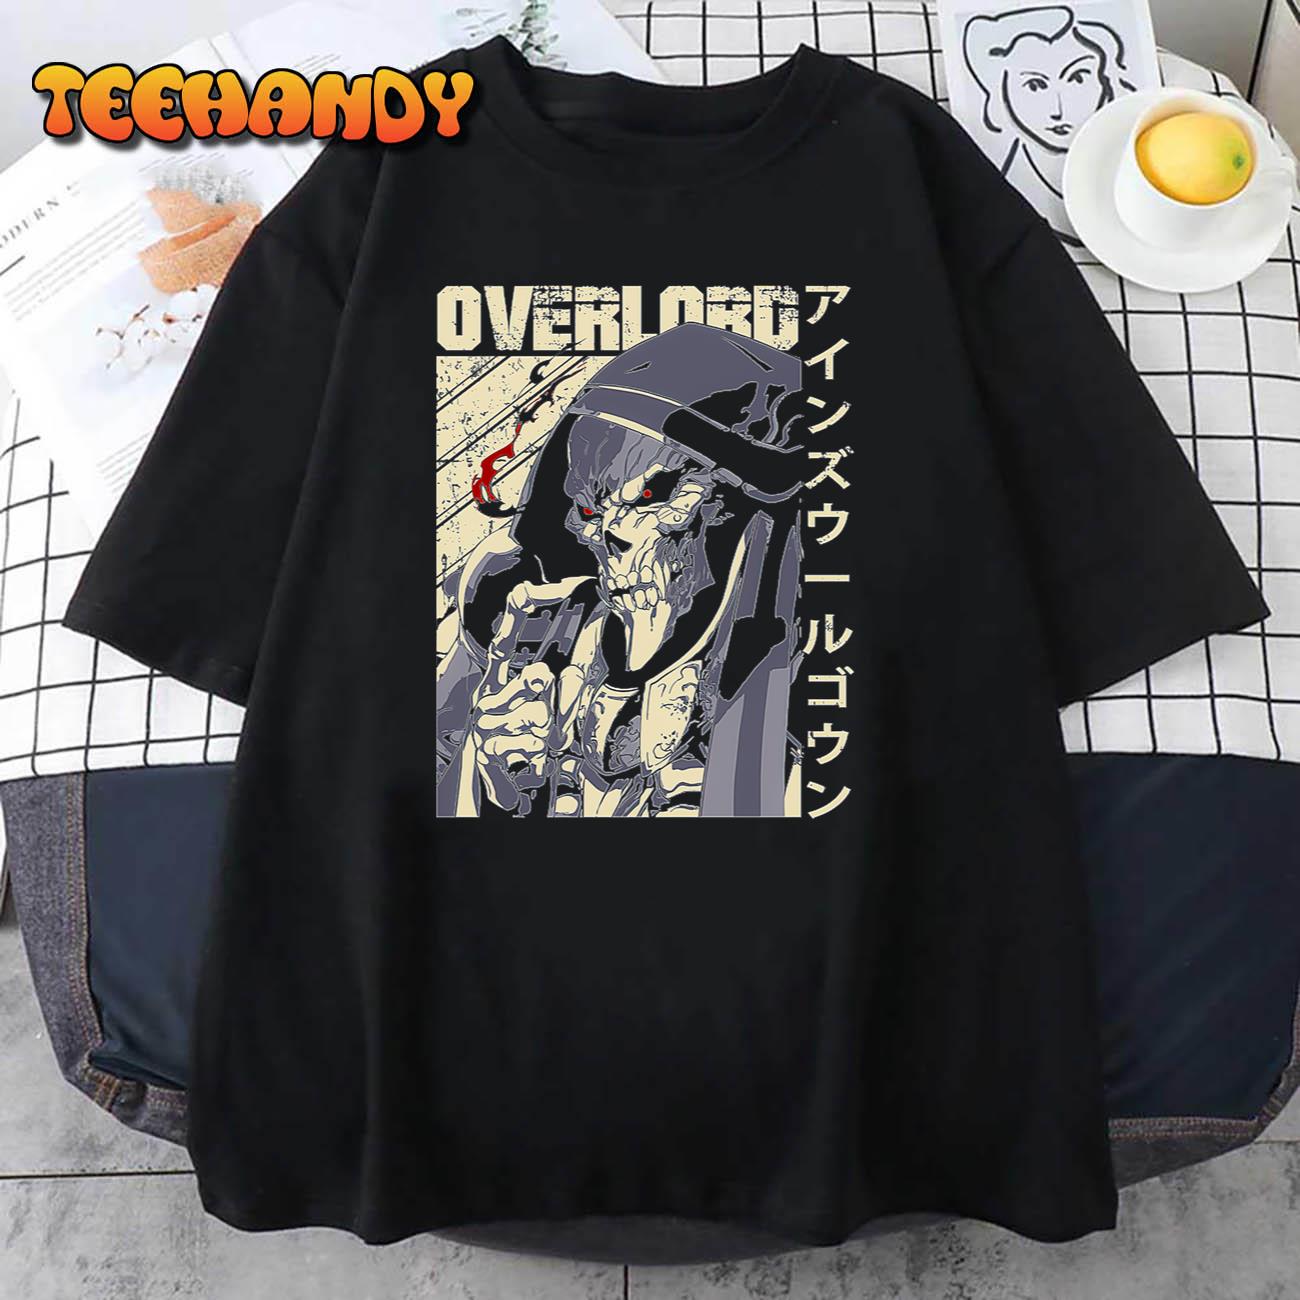 Overlord Japanese Style Artwork Unisex T Shirt img2 C12